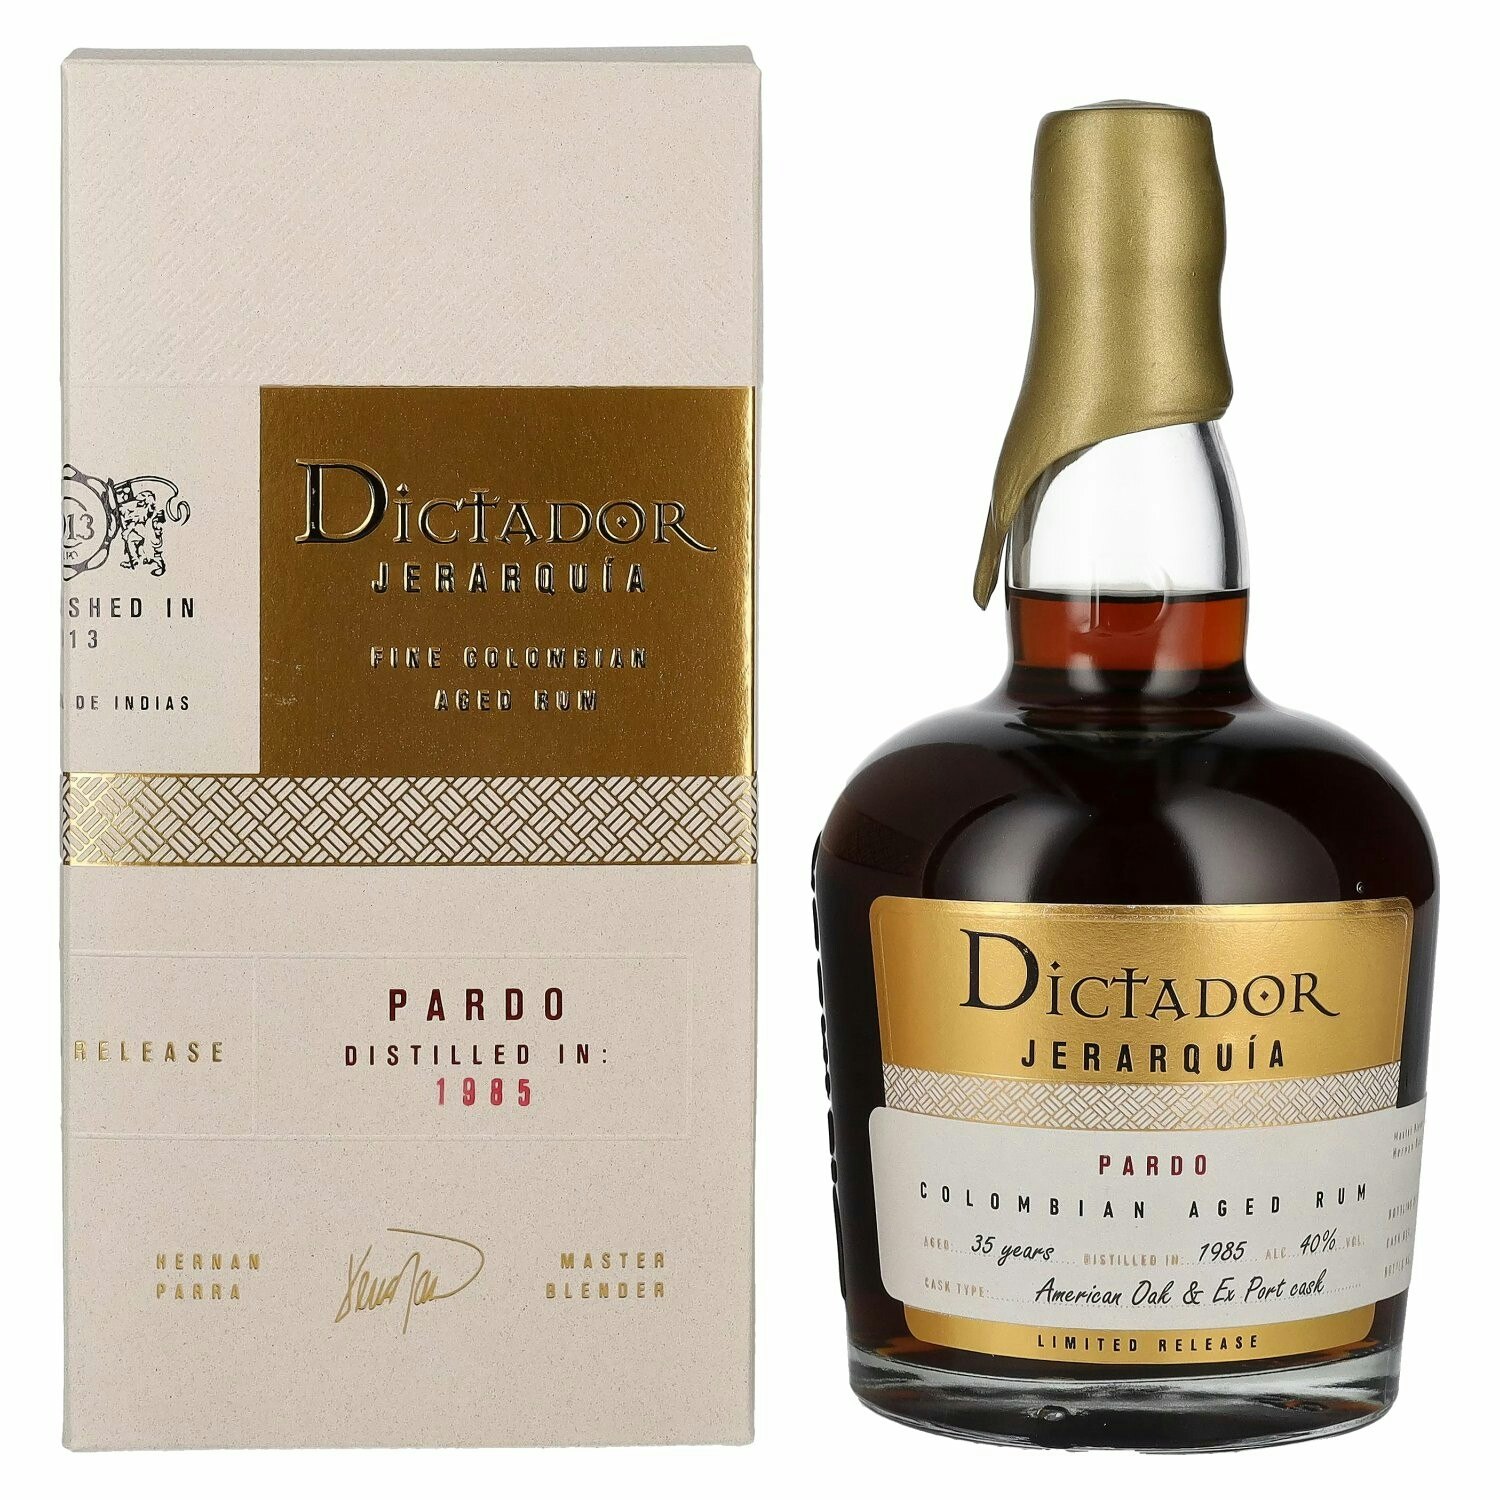 Dictador JERARQUÍA 35 Years Old PARDO Rum 1985 40% Vol. 0,7l in Giftbox